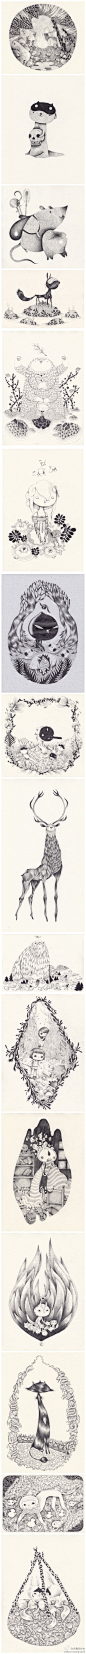 #求是爱插画#Yohan Sacré的动物铅笔插画